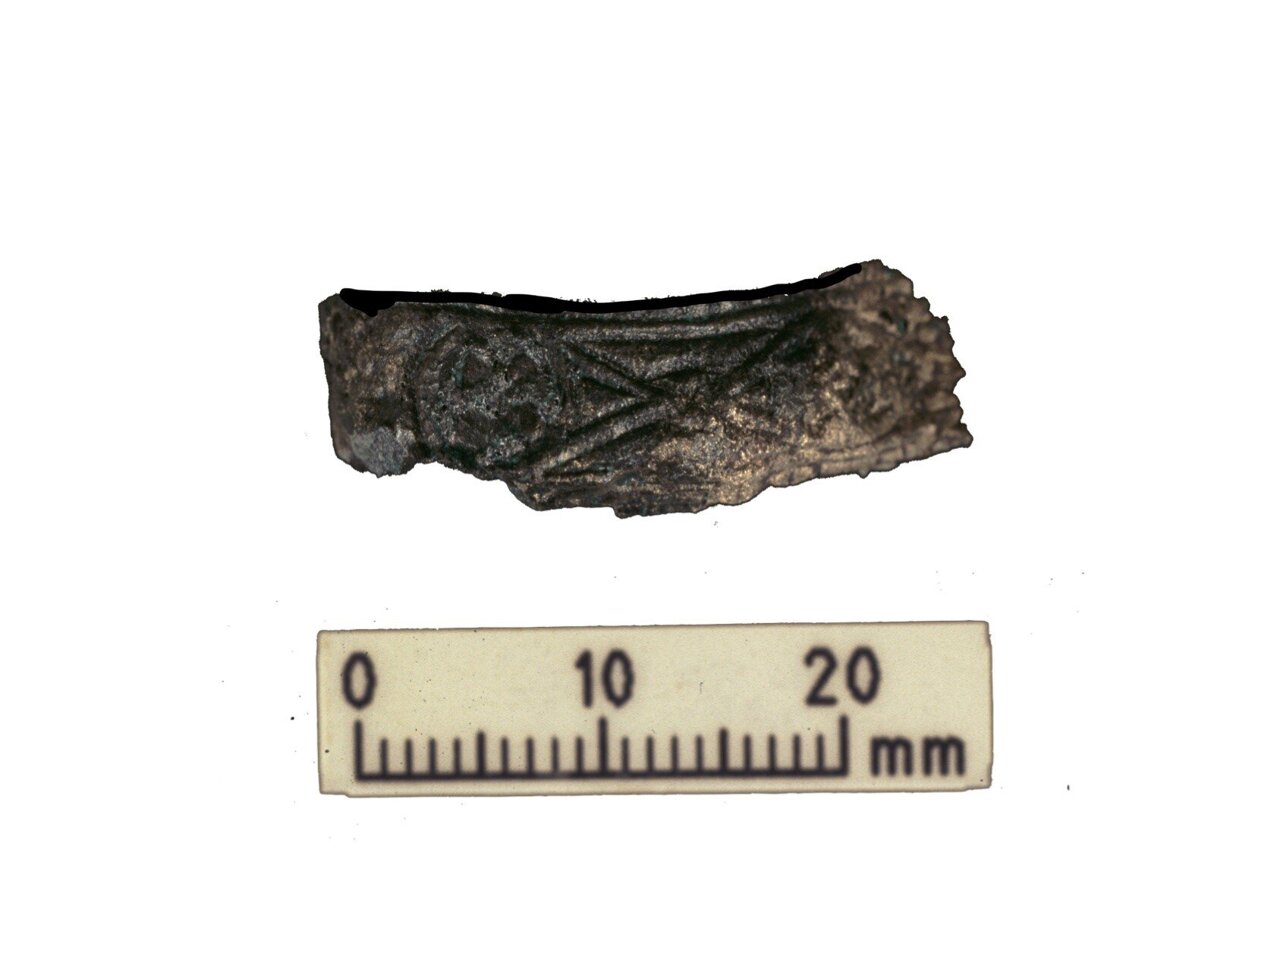 محافظ دسته تزئین شده از شمشیر جنگجوی وایکینگ. این شمشیر در همان قبری پیدا شد که بقایای انسان و حیوان در آخرین تحقیقات مورد تجزیه و تحلیل قرار گرفت.